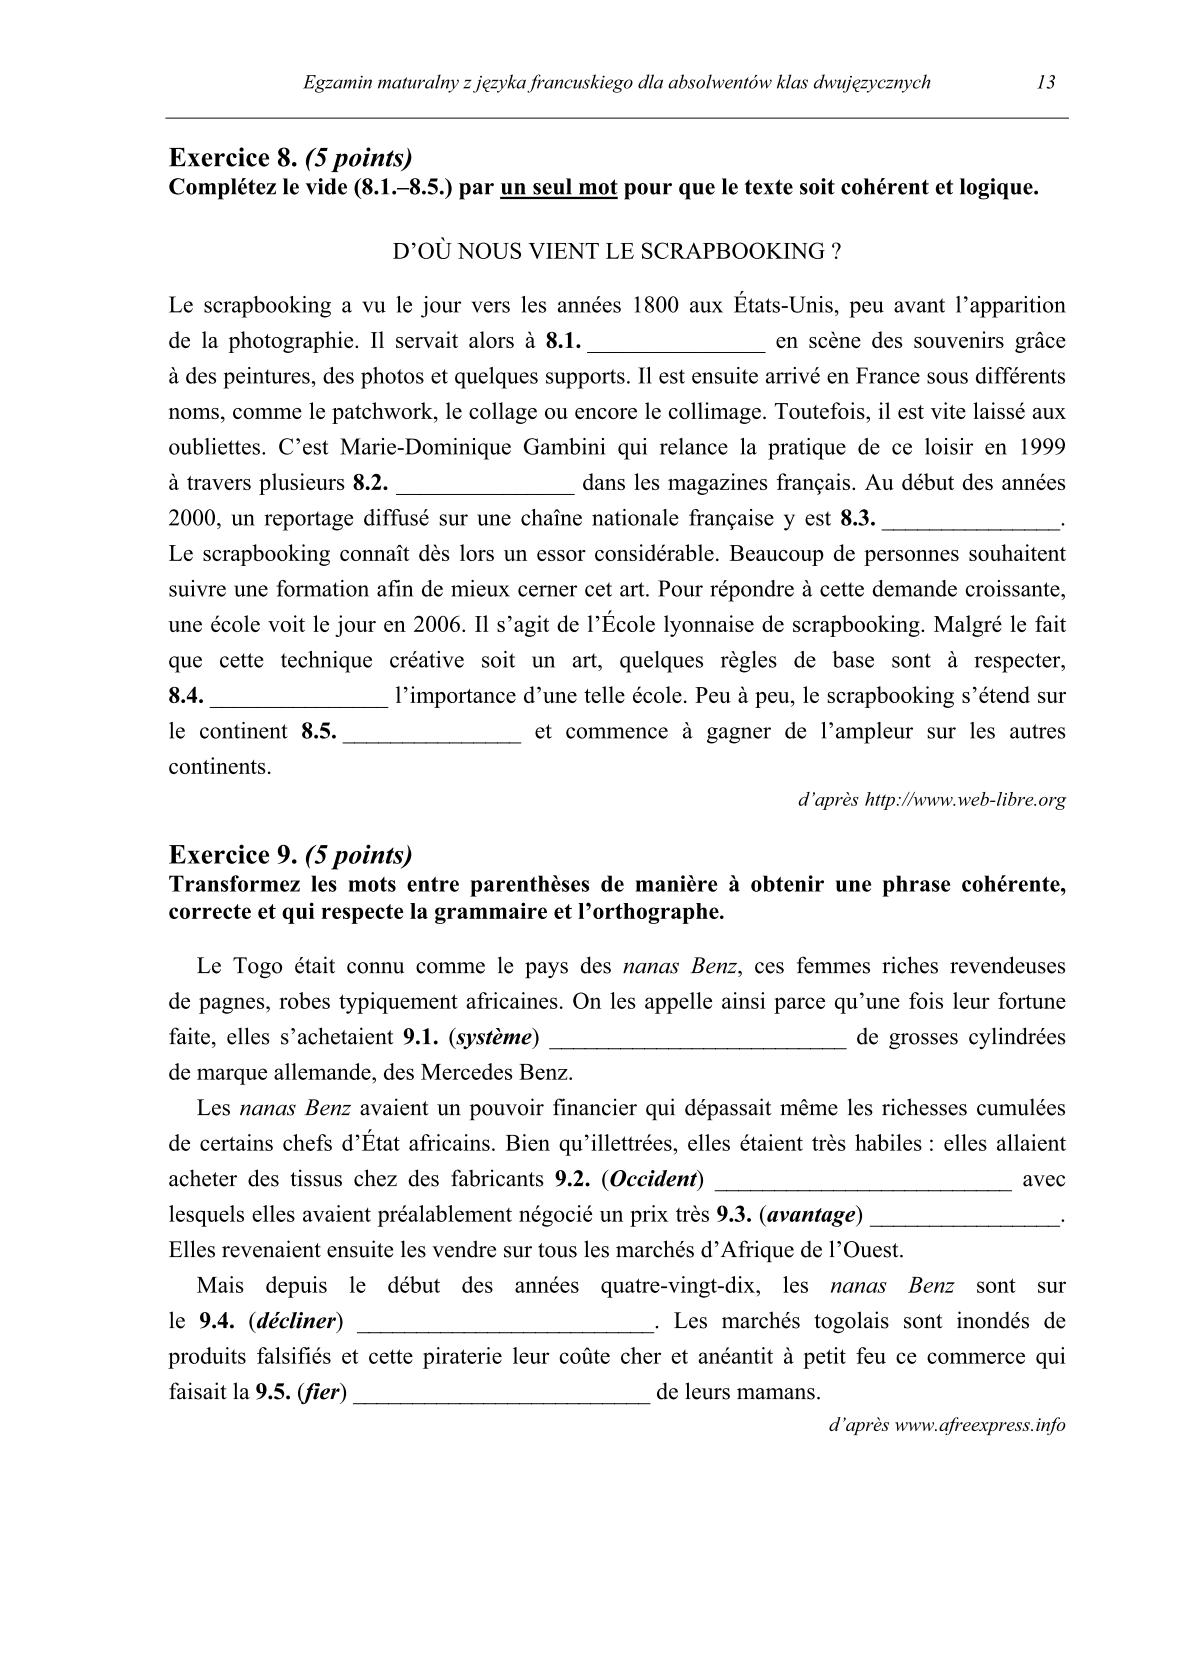 pytania-jezyk-francuski-dla-absolwentow-klas-dwujezycznych-matura-2014-str.13